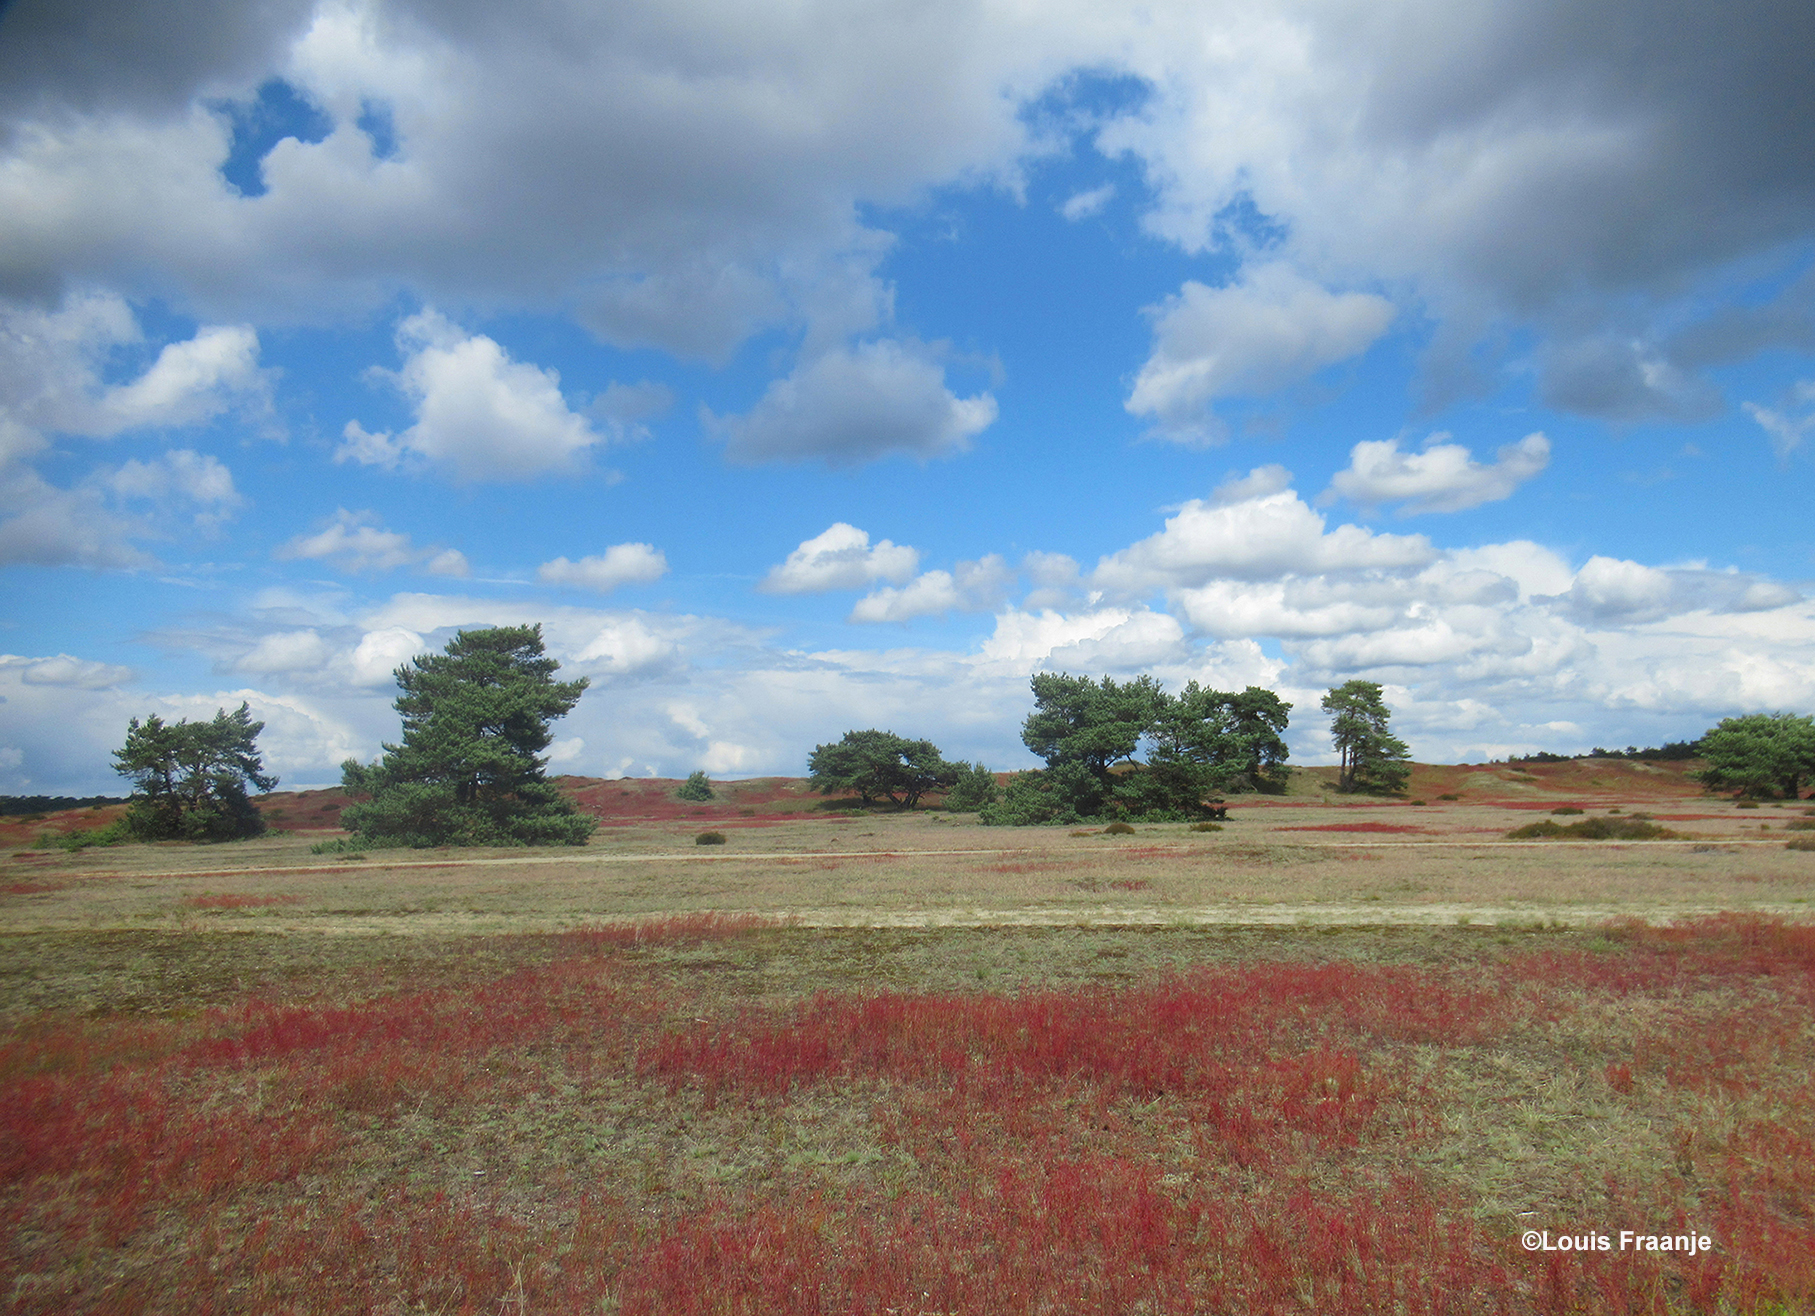 Prachtige wolkenluchten en een rood tapijt van Schapenzuring - Foto: ©Louis Fraanje